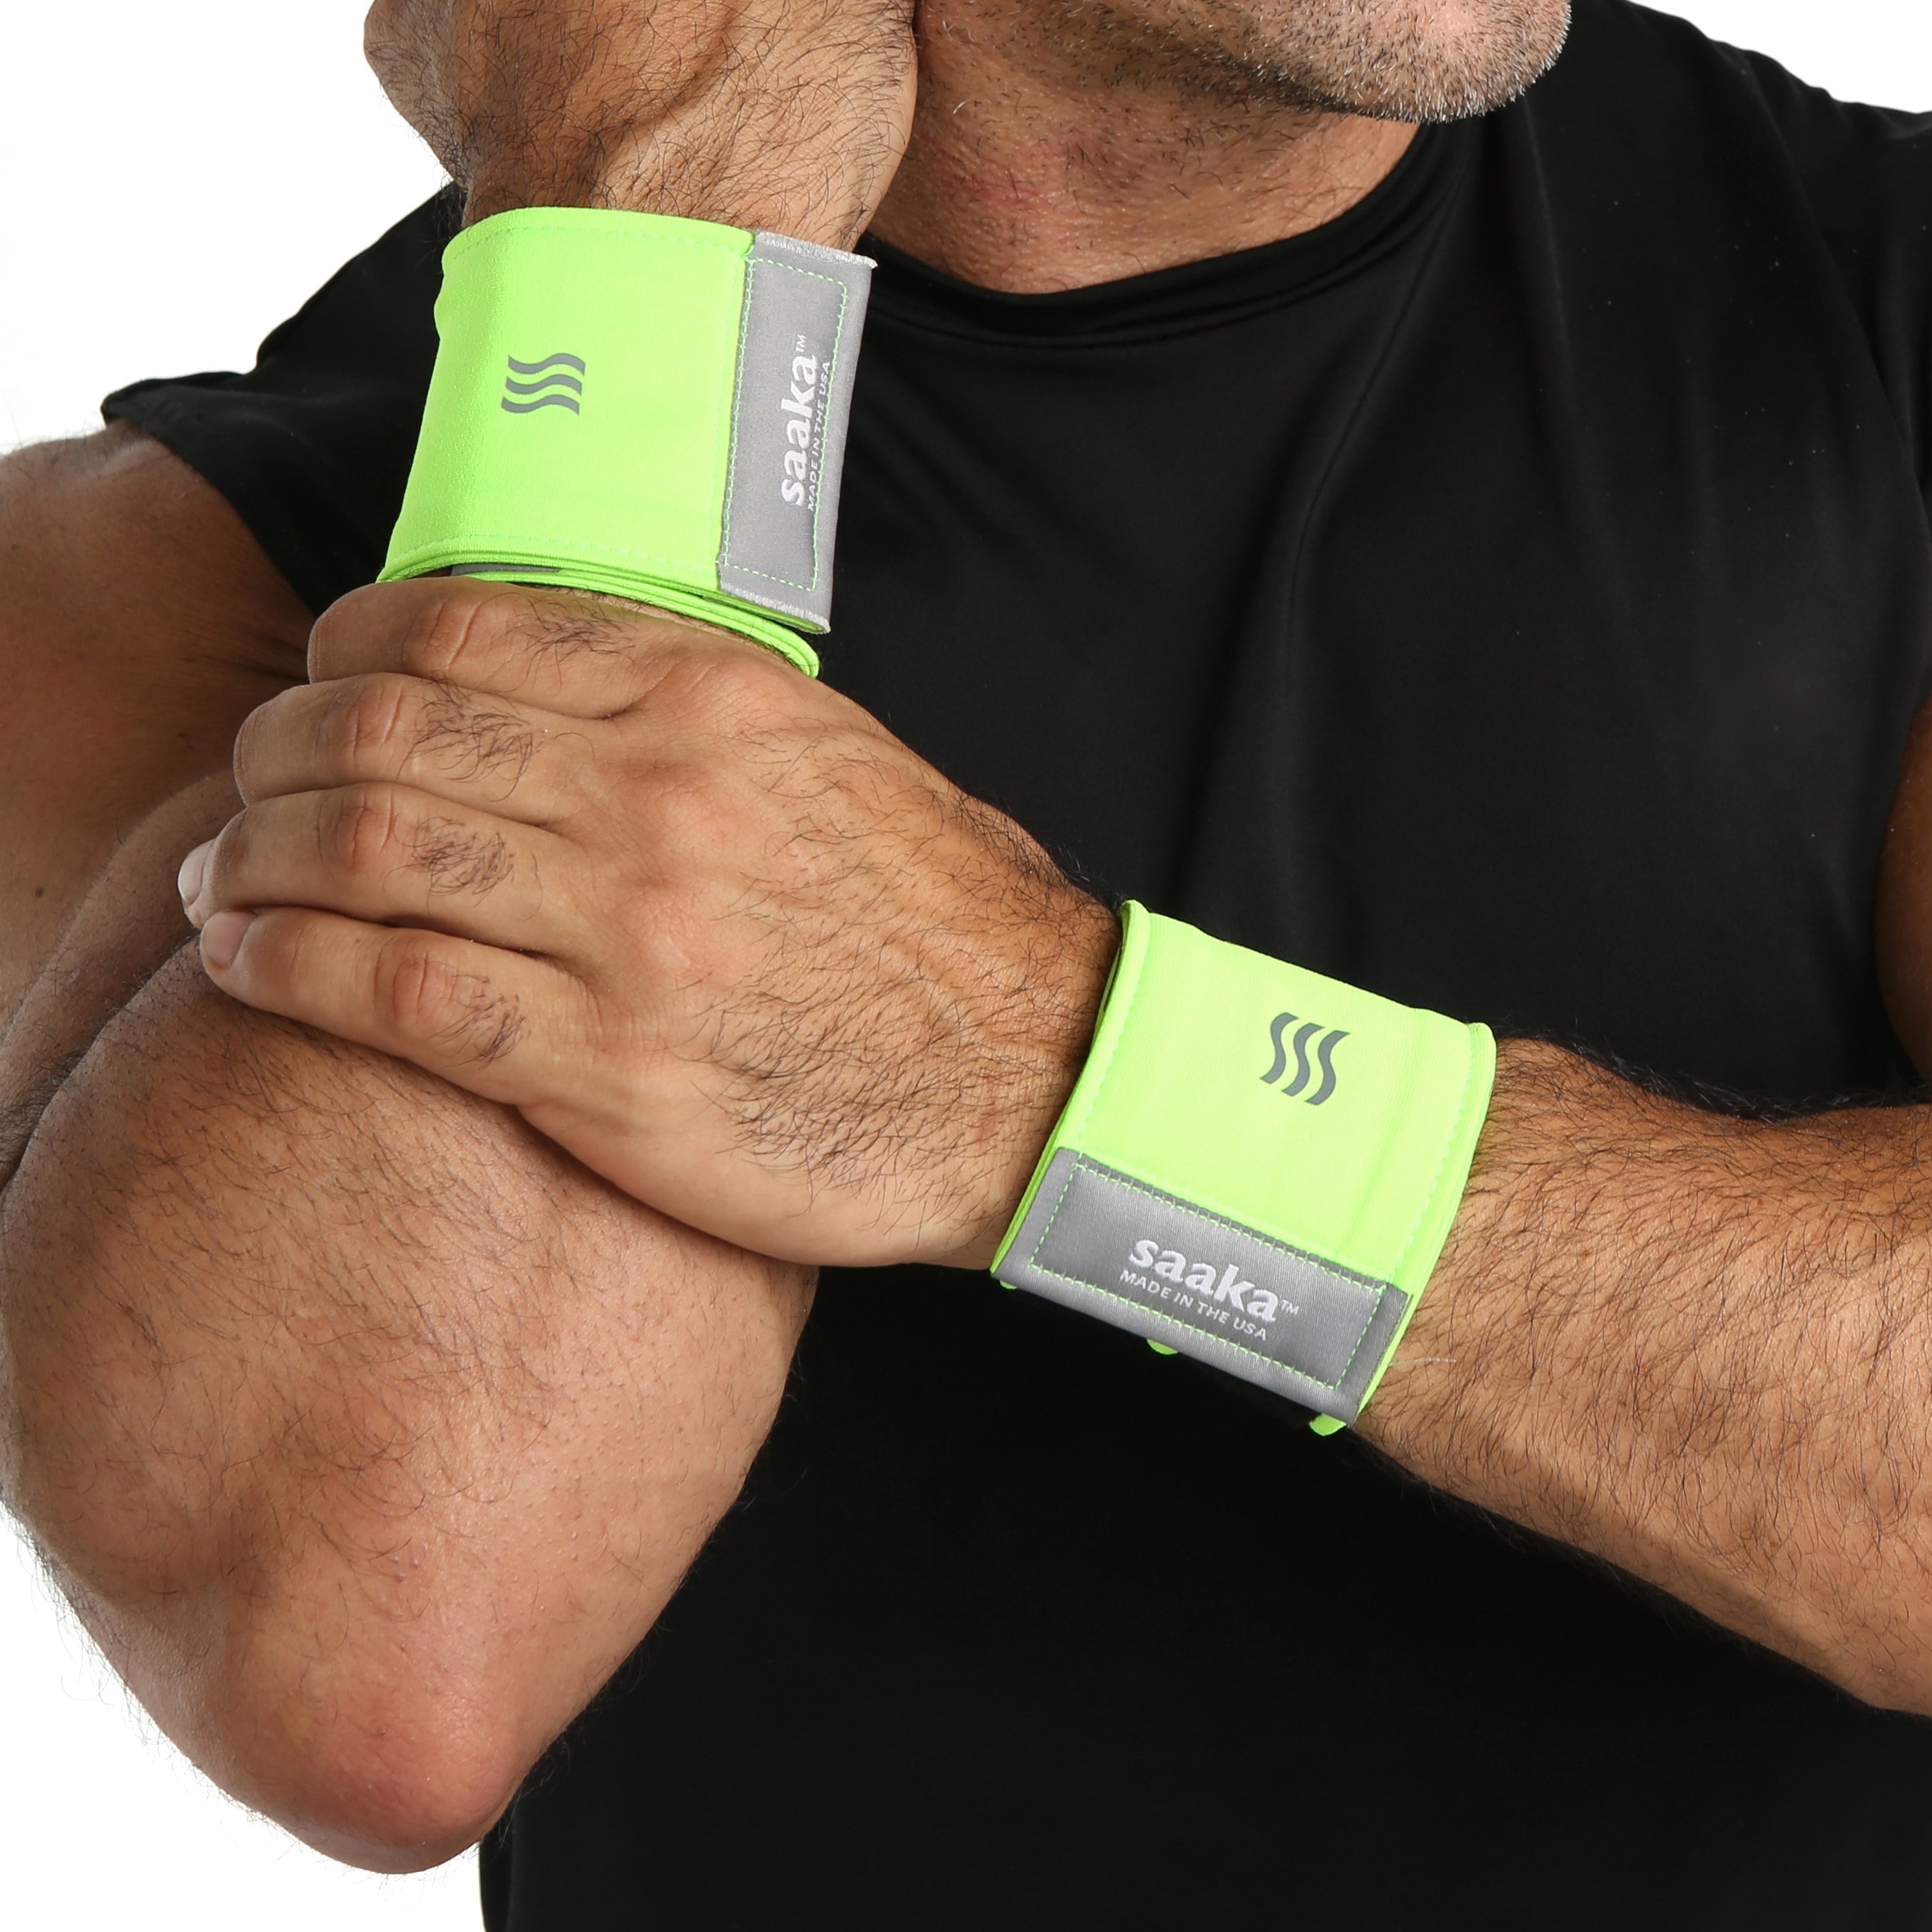 Man wearing athletic wrist sweatbands in neon green.